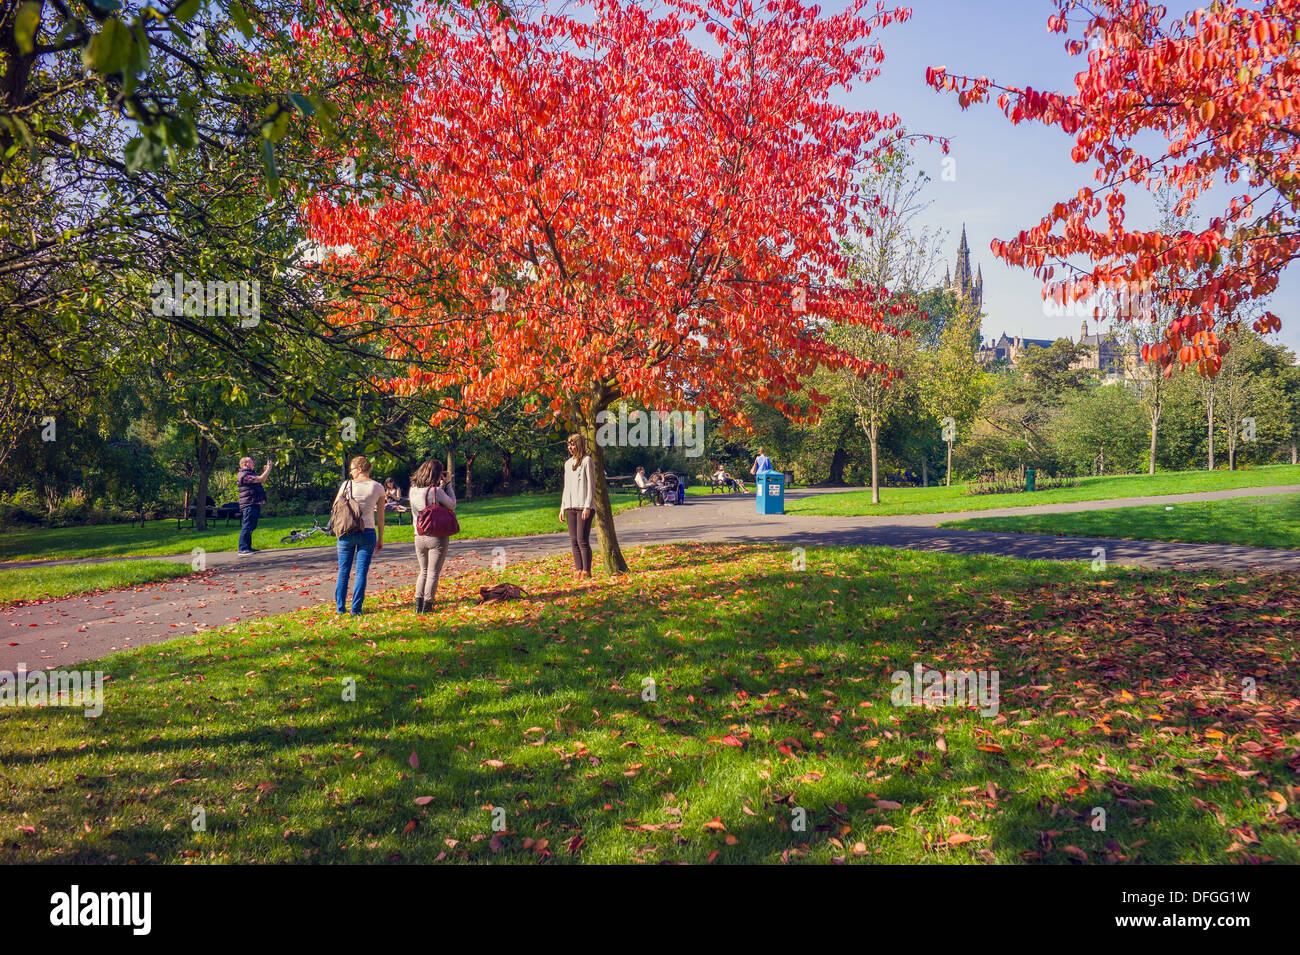 Vistas generales del parque Kelvingrove, Glasgow, algunos colores de otoño y la gente disfruta caminando o mirando el paisaje maravilloso Foto de stock